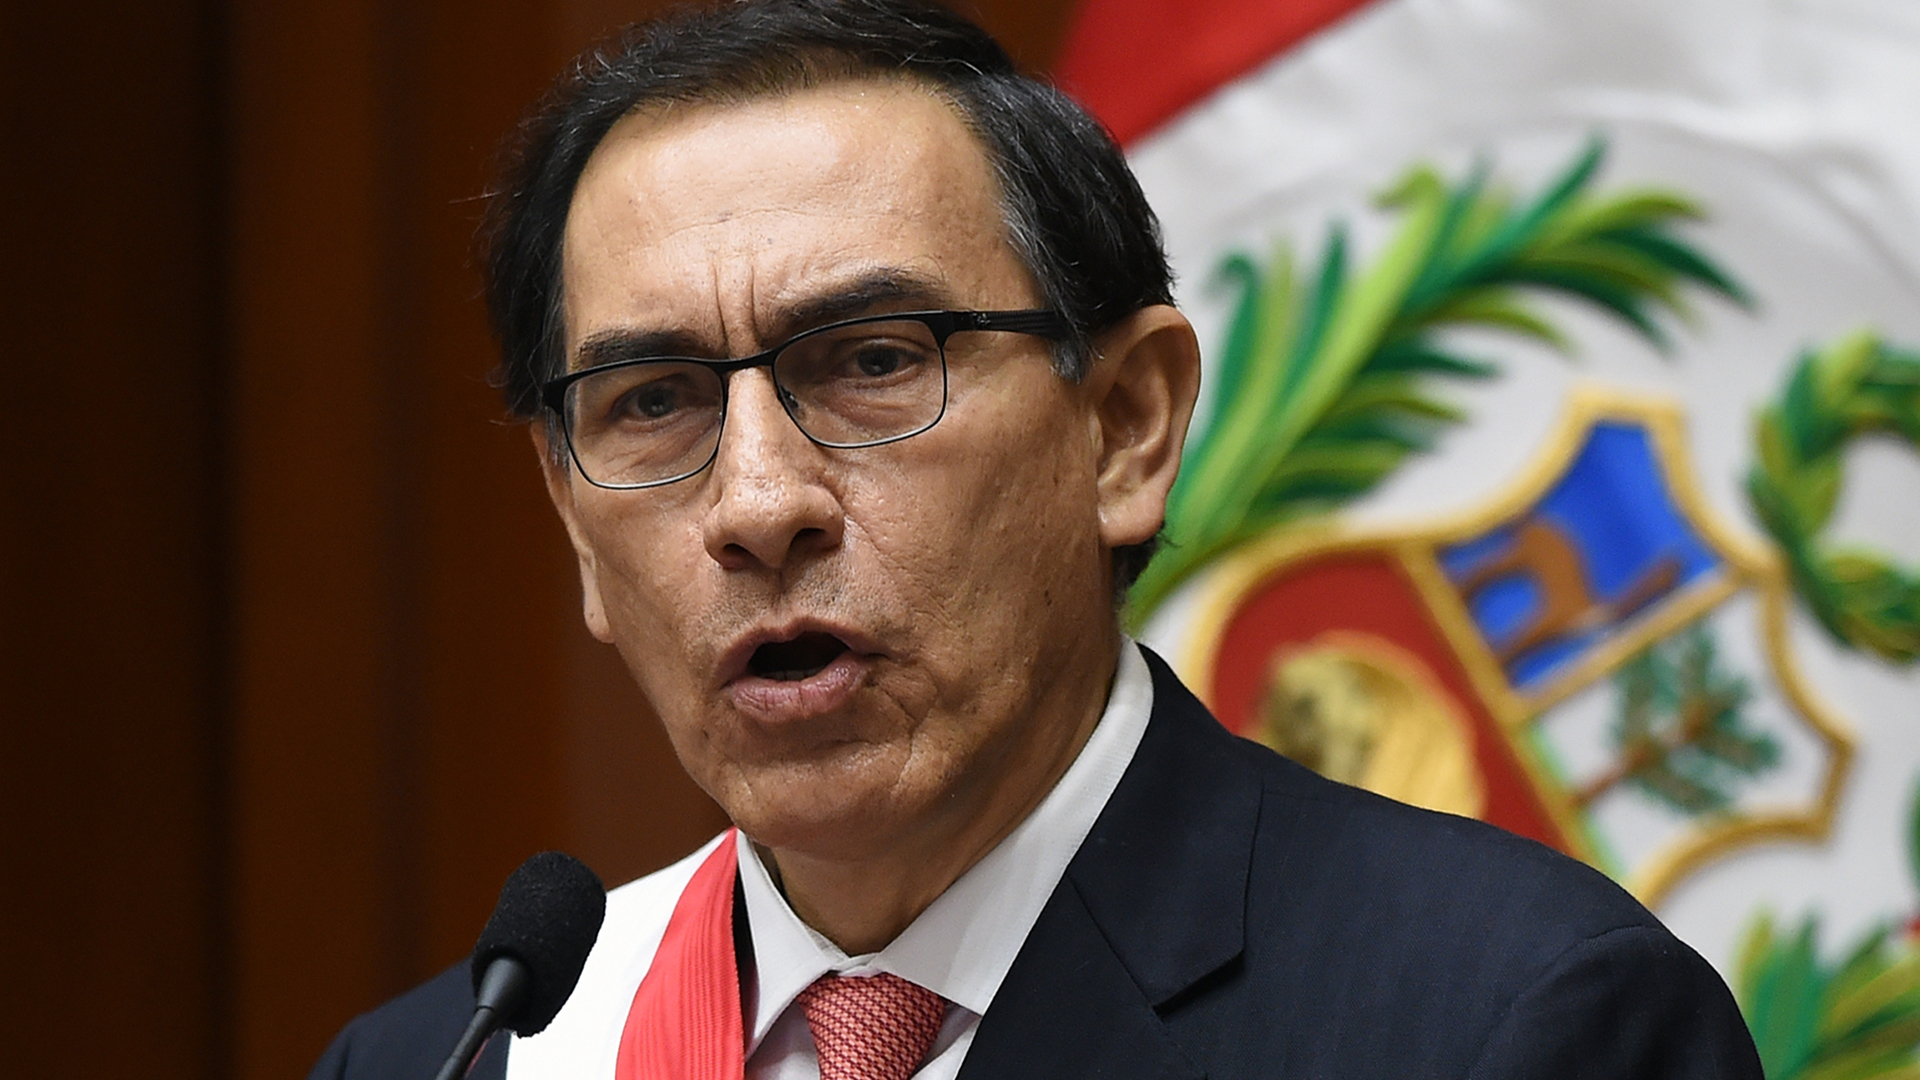 Según encuesta: 91% de los peruanos desaprueba destitución de Martín Vizcarra